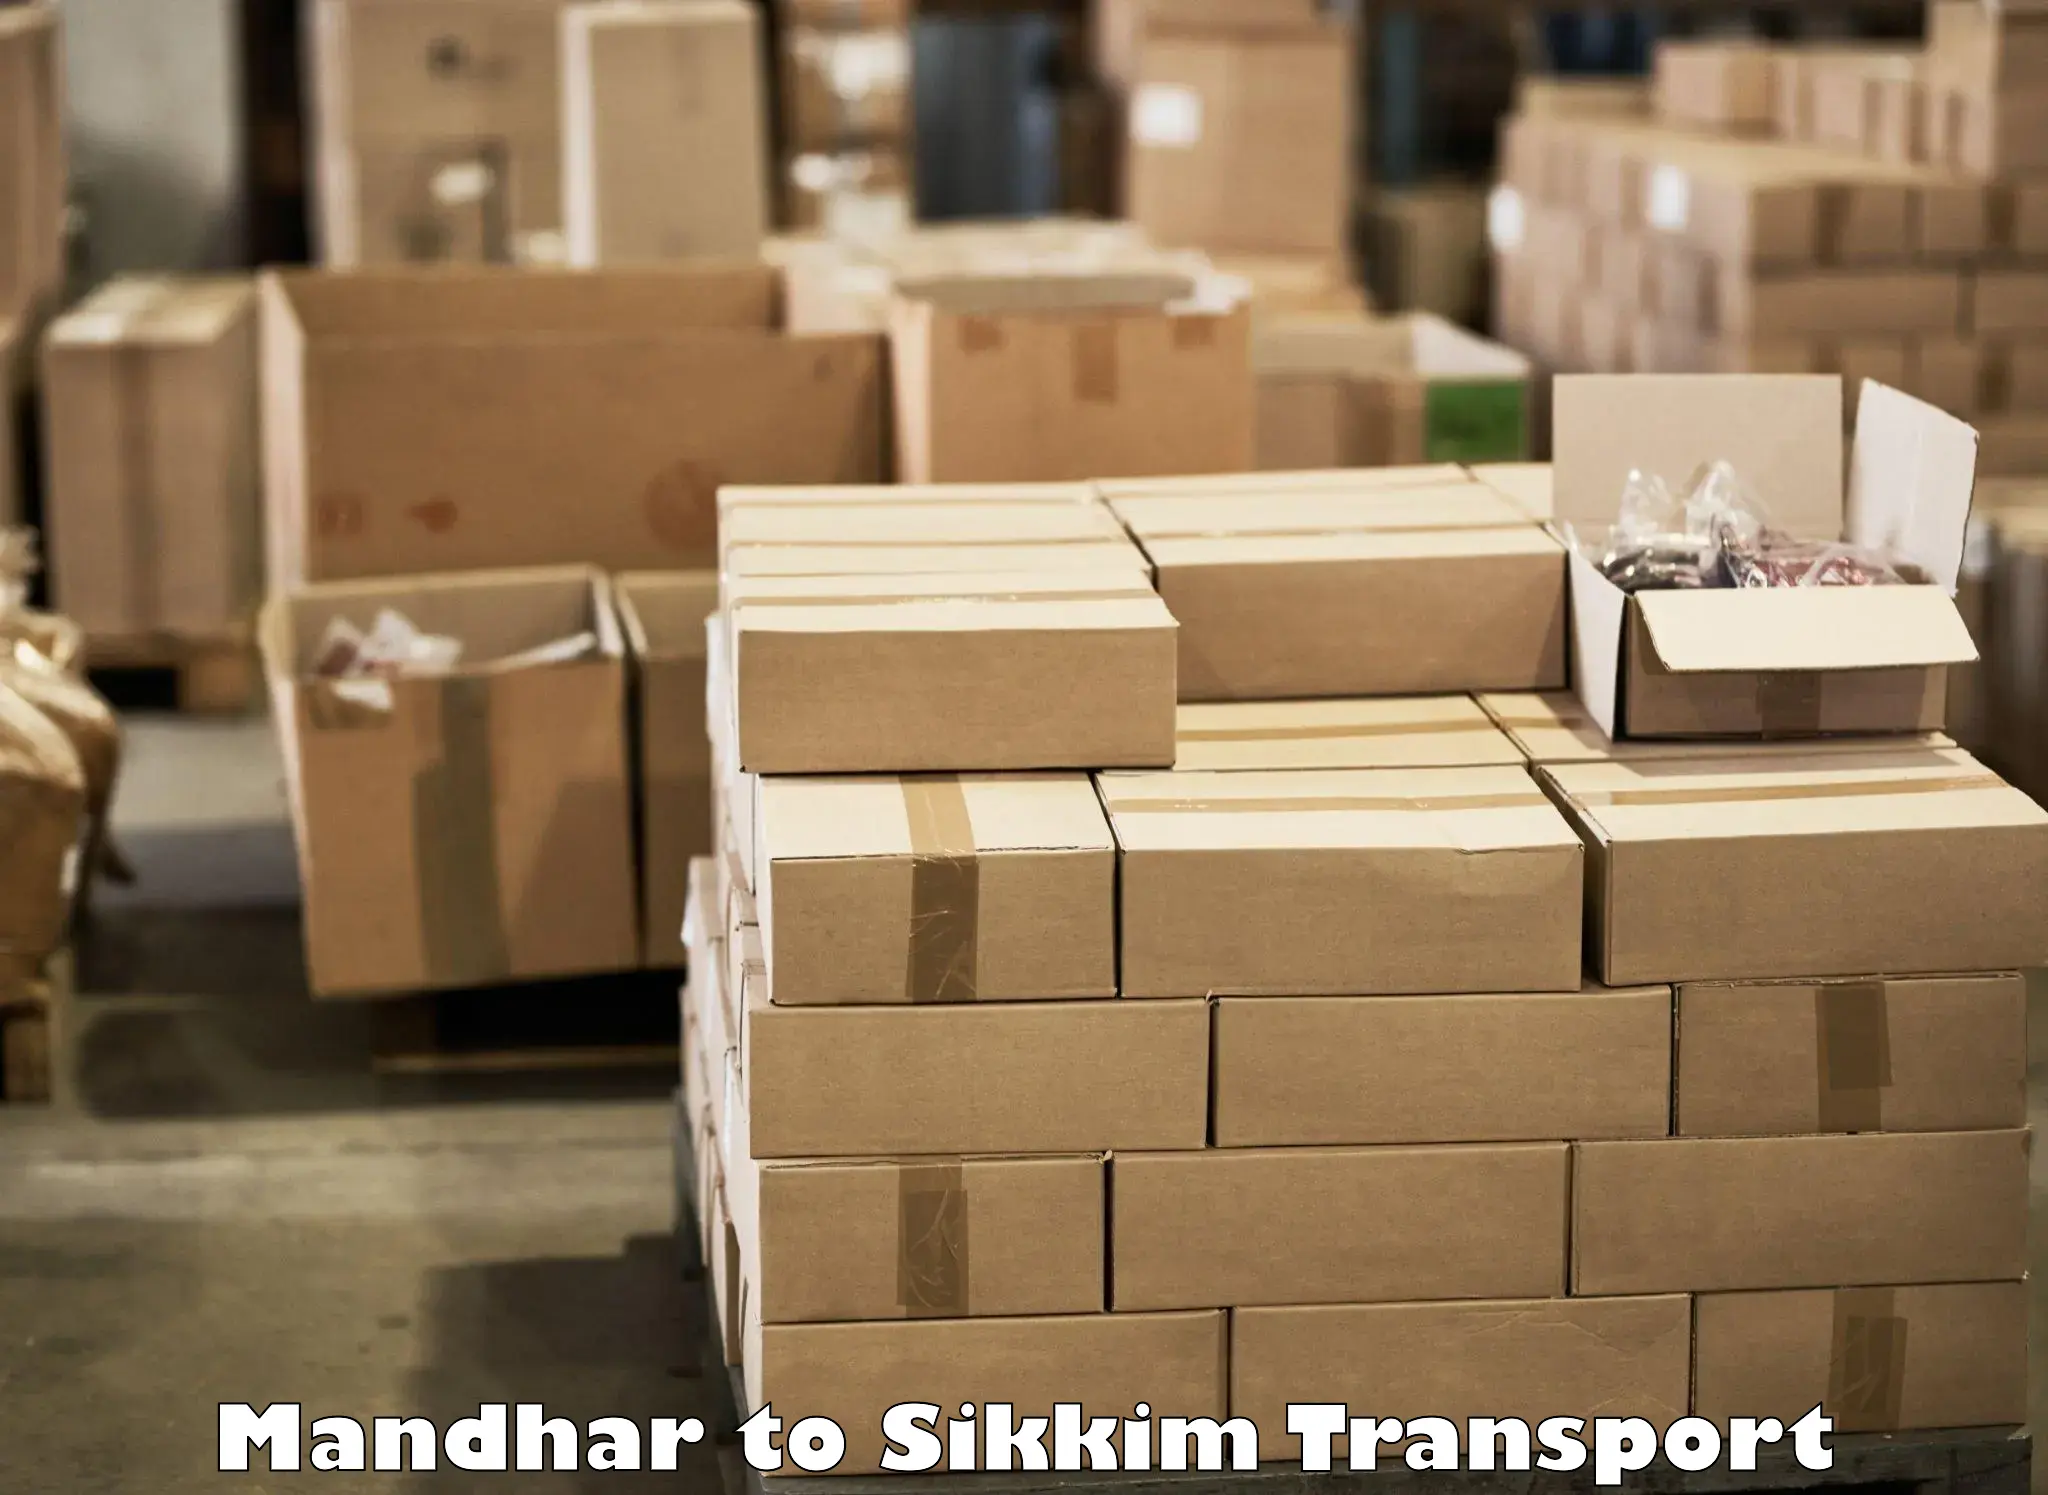 Shipping partner Mandhar to Mangan